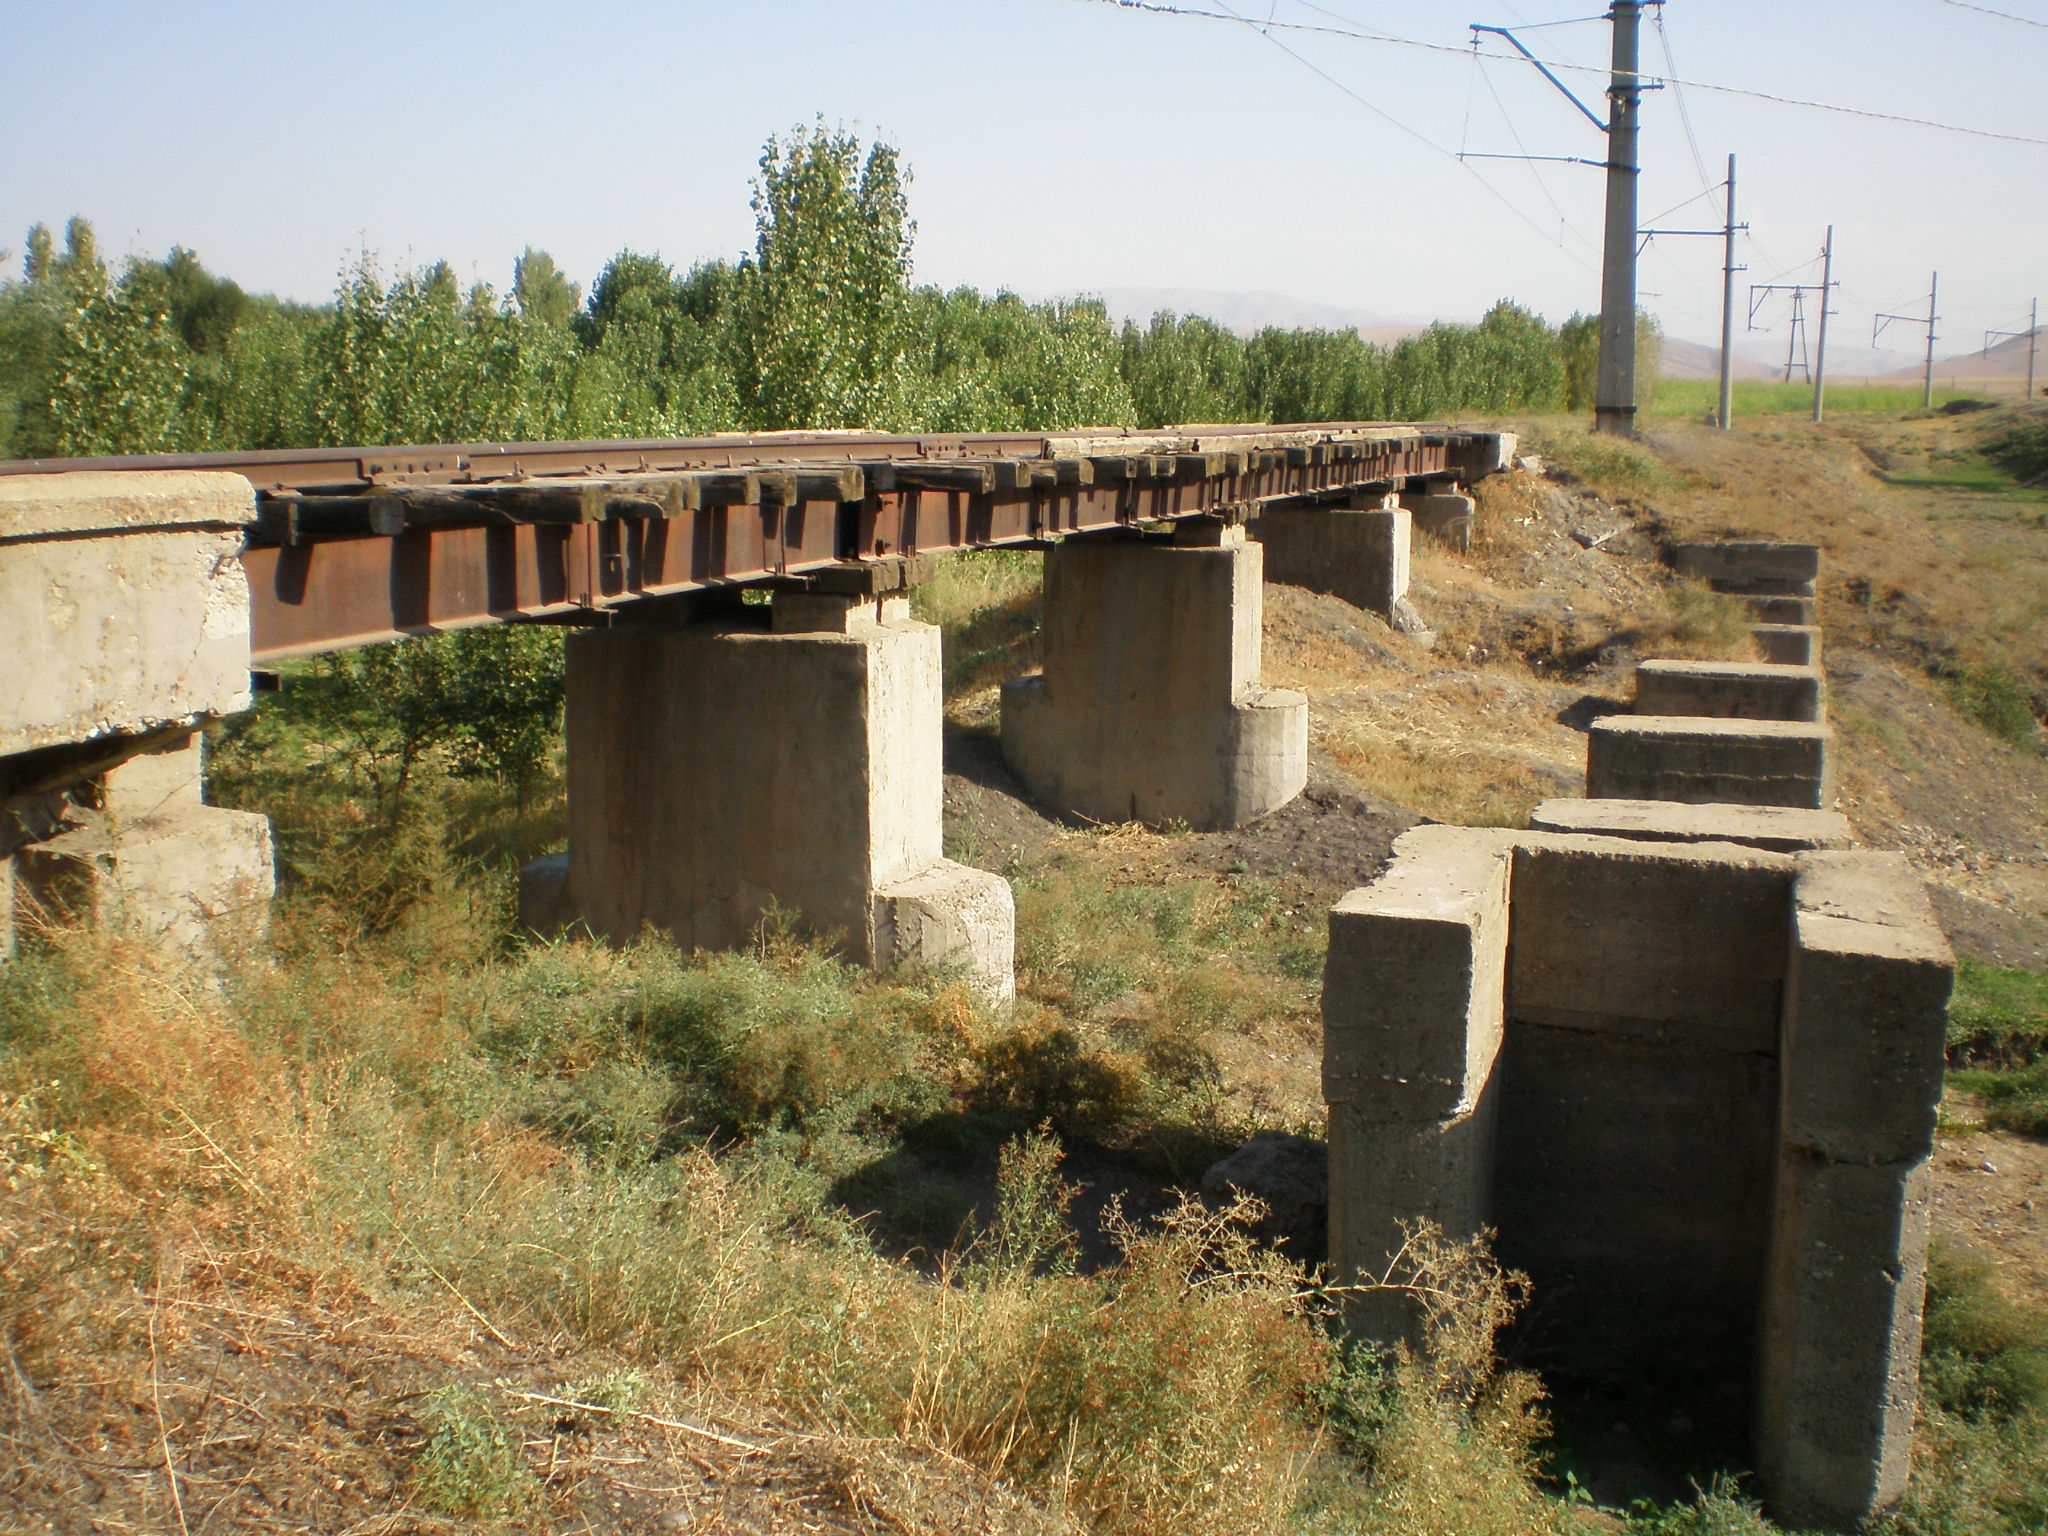 Сулюктинская узкоколейная железная дорога  —  фотографии, сделанные в 2008 году (часть 21)